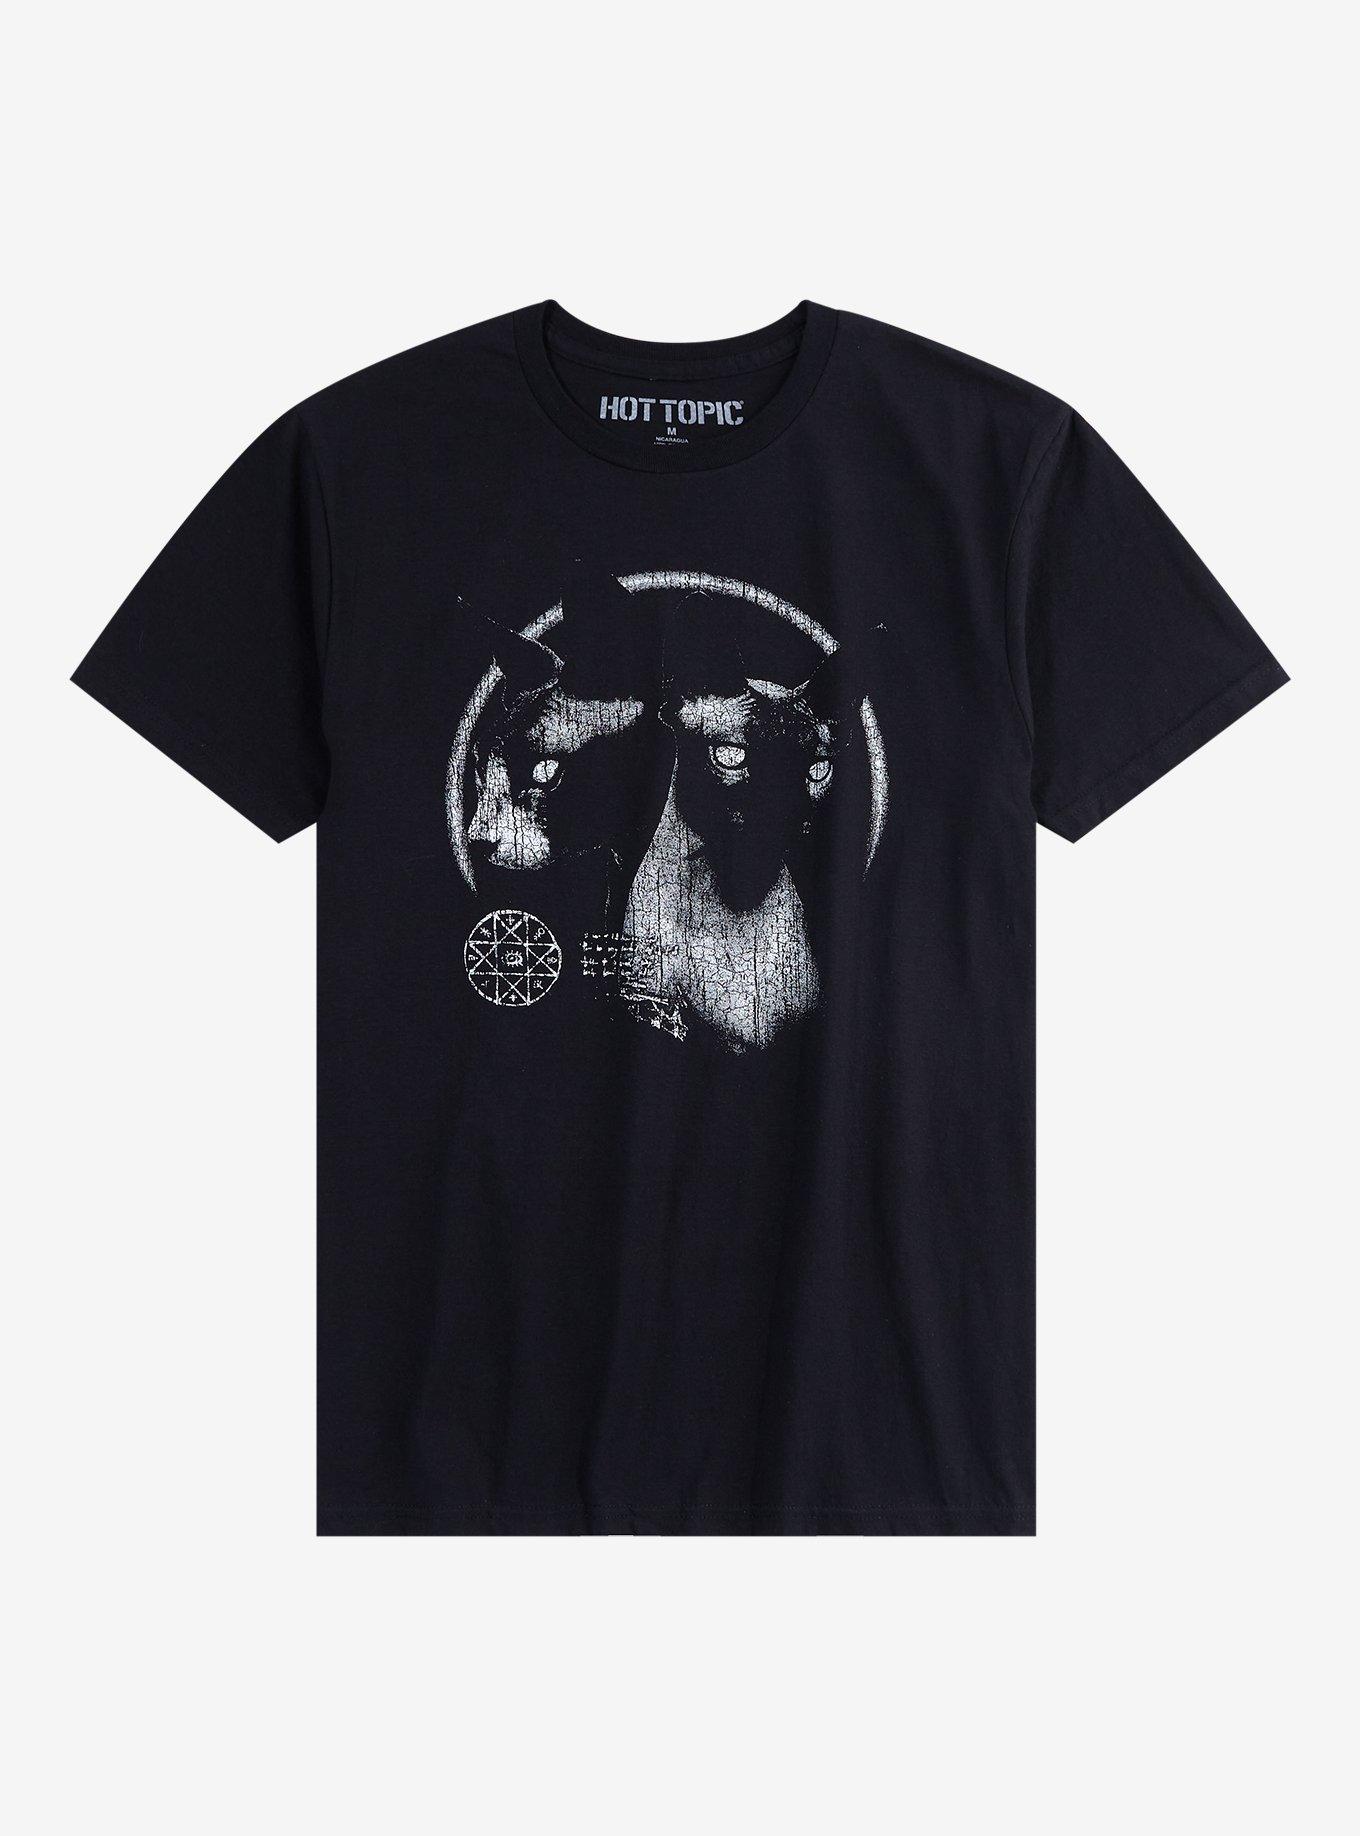 Evil Sphynx Cats T-Shirt, BLACK, hi-res